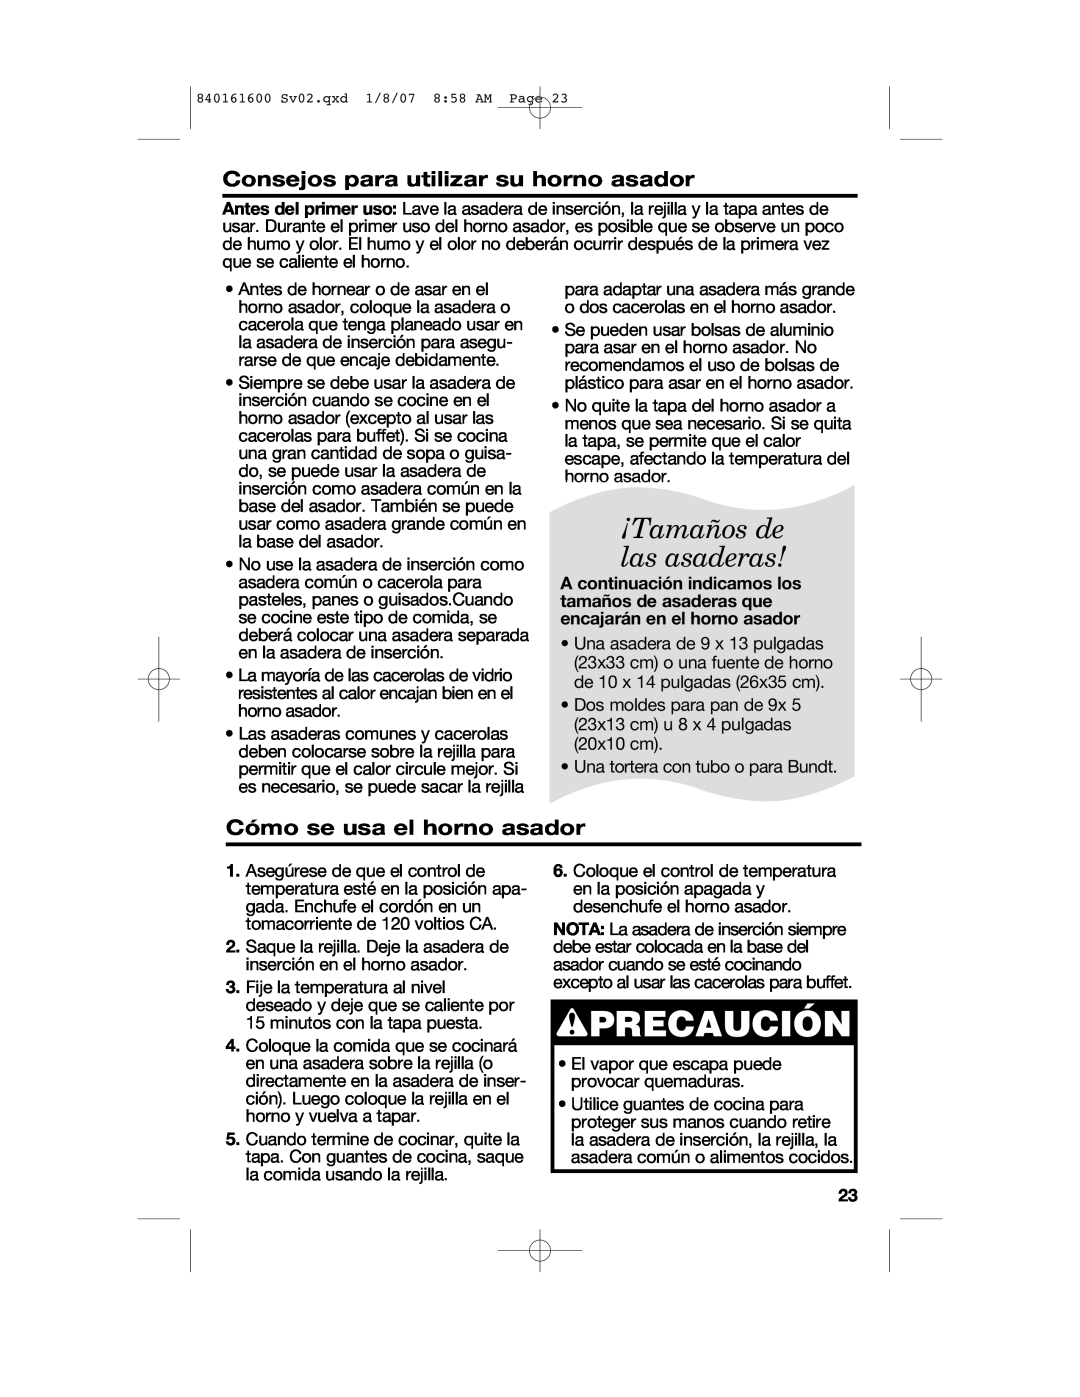 Proctor-Silex 840161600 manual wPRECAUCIÓN, ¡Tamaños de las asaderas, Consejos para utilizar su horno asador 